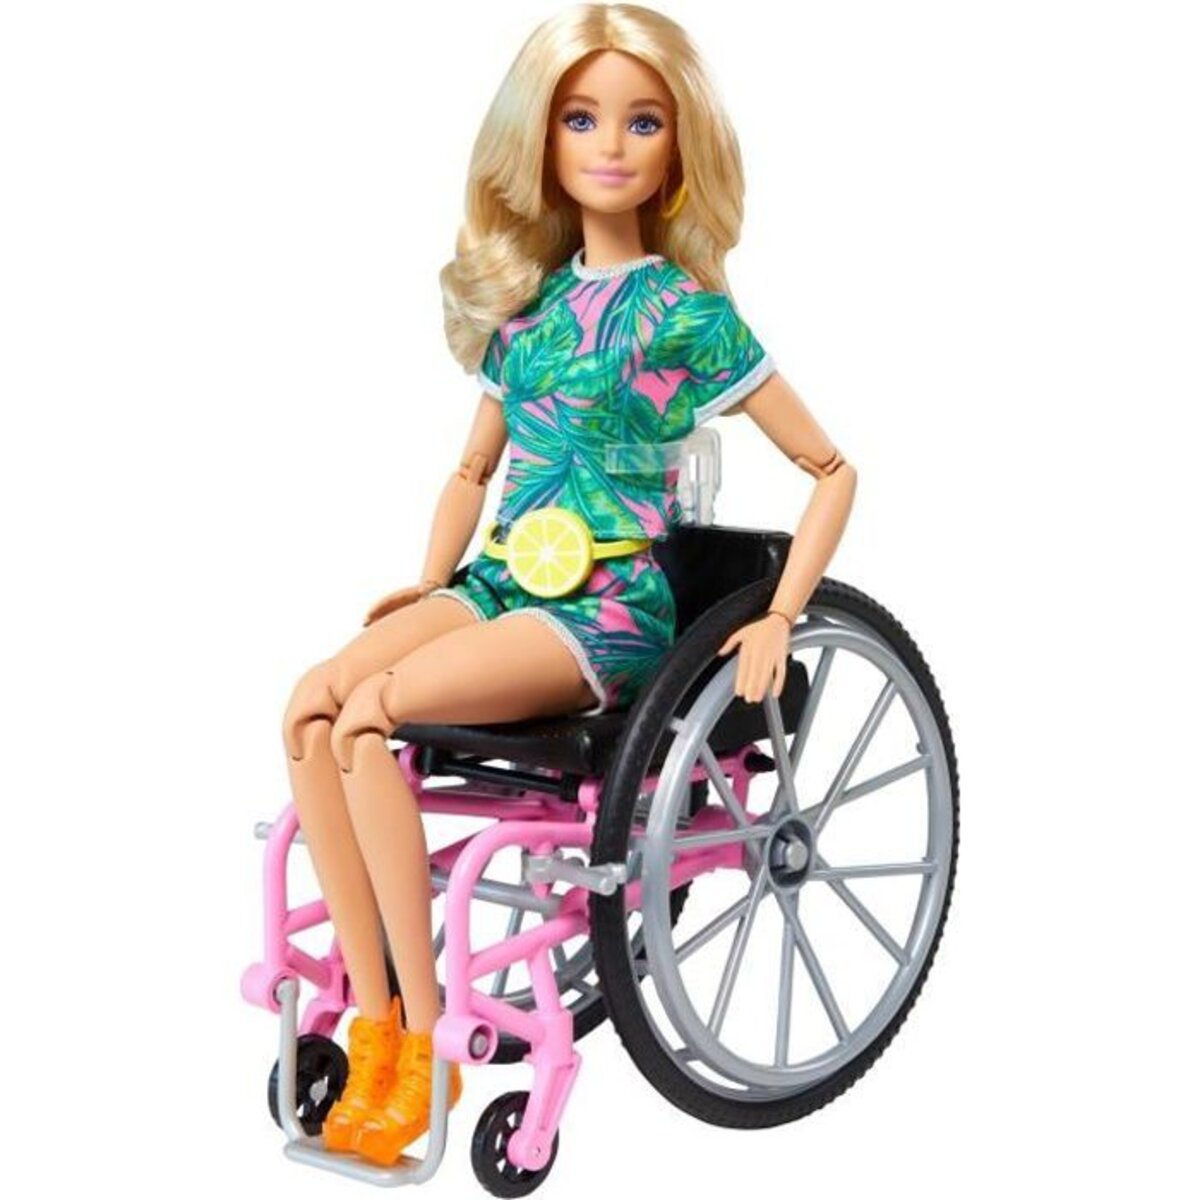 Barbie mobilier barbie au supermarché - La Poste